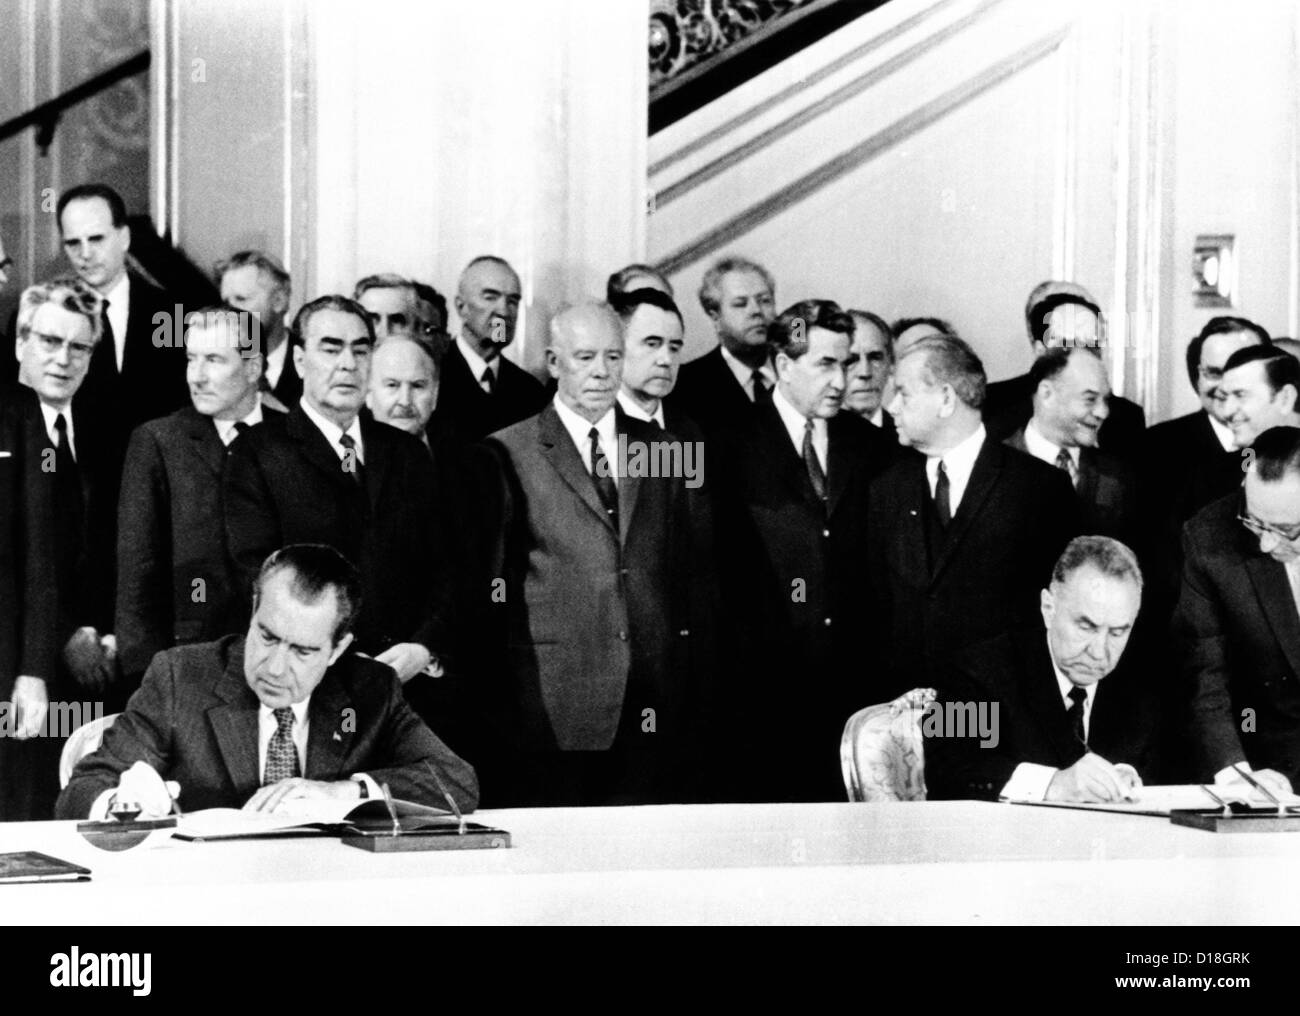 Präsident Richard Nixon und sowjetischen Ministerpräsidenten Alexei Kosygin unterzeichnen eine Vereinbarung zur gemeinsamen amerikanisch-sowjetischen Experimentaufbauten. Hinter Stockfoto